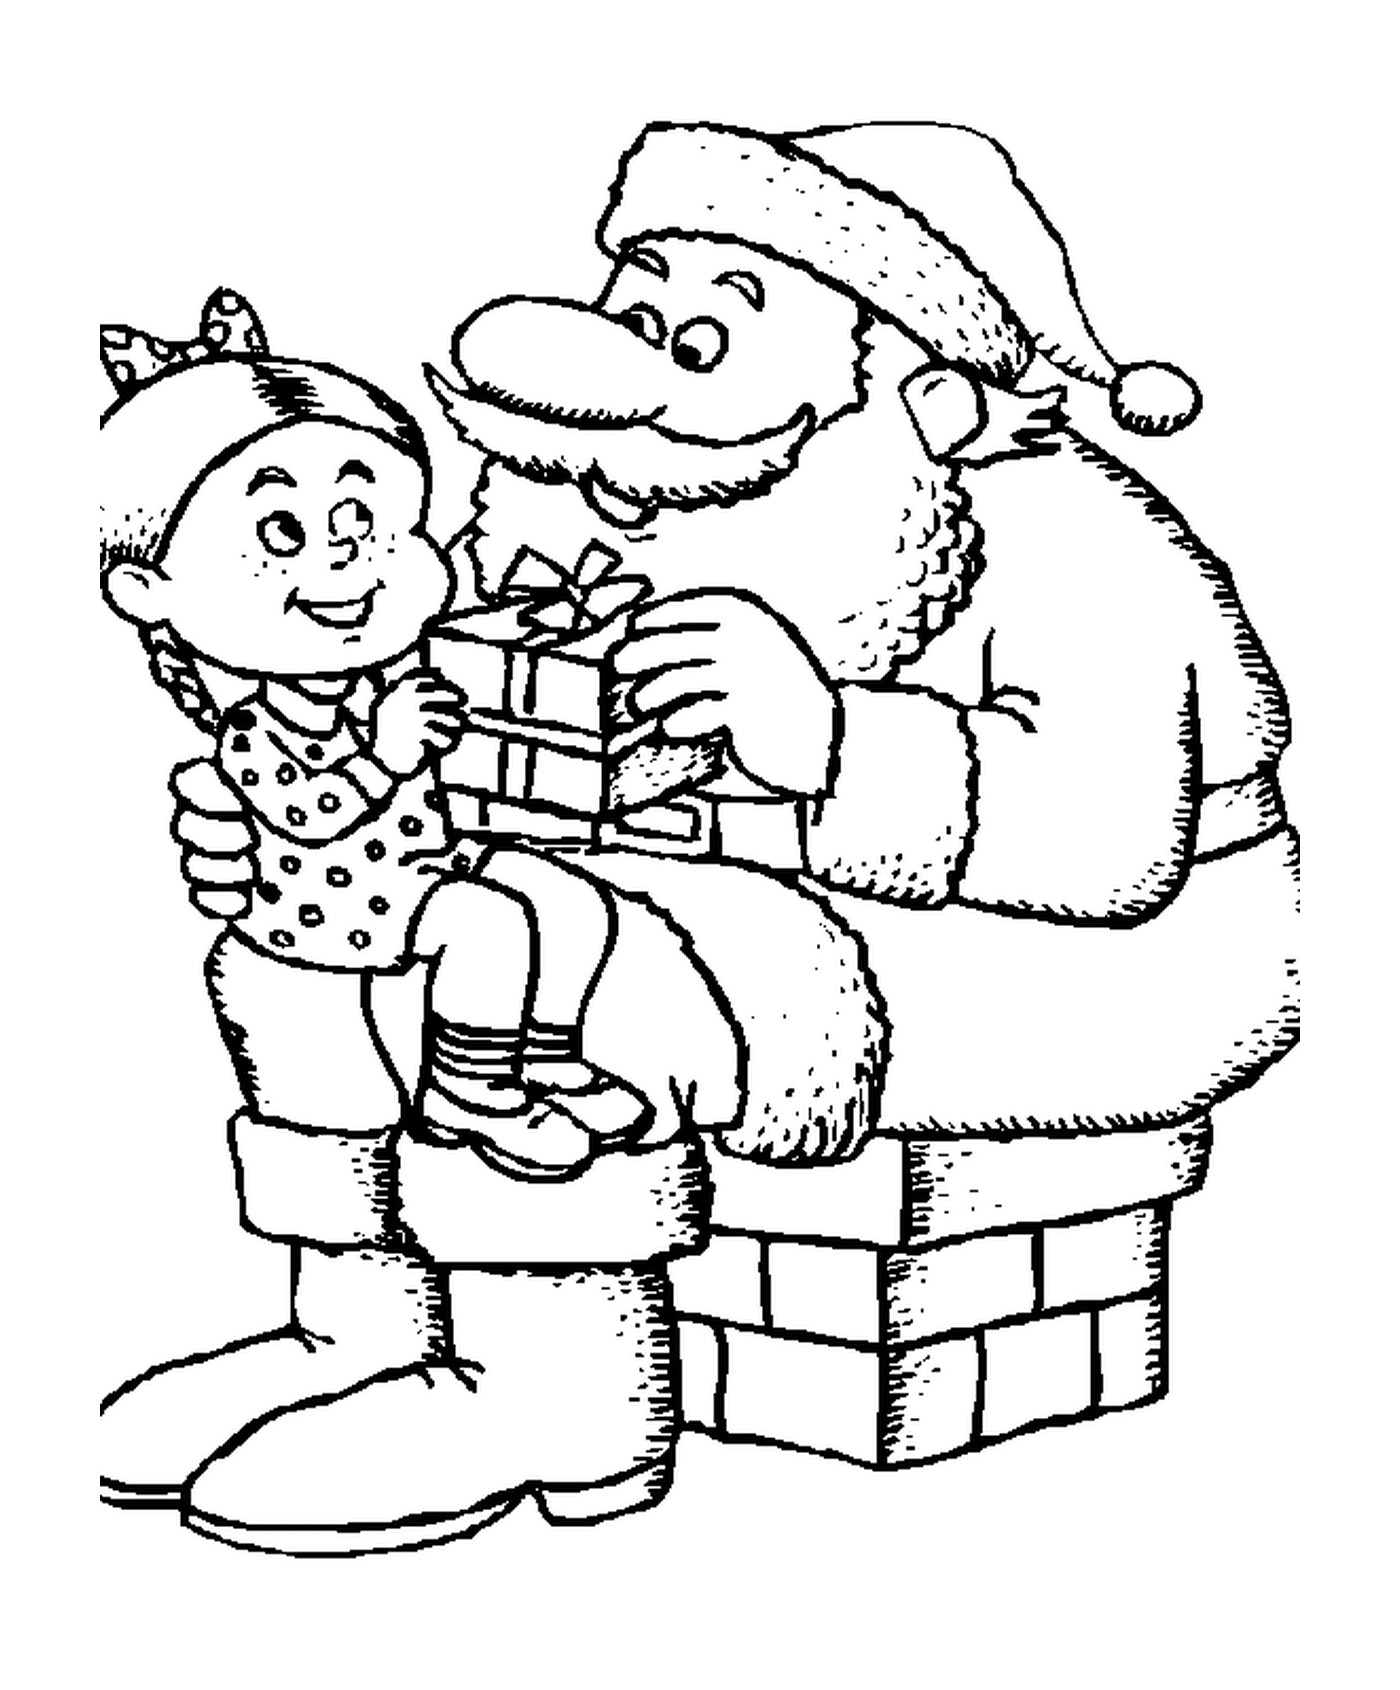  Санта Клаус и маленькая девочка 